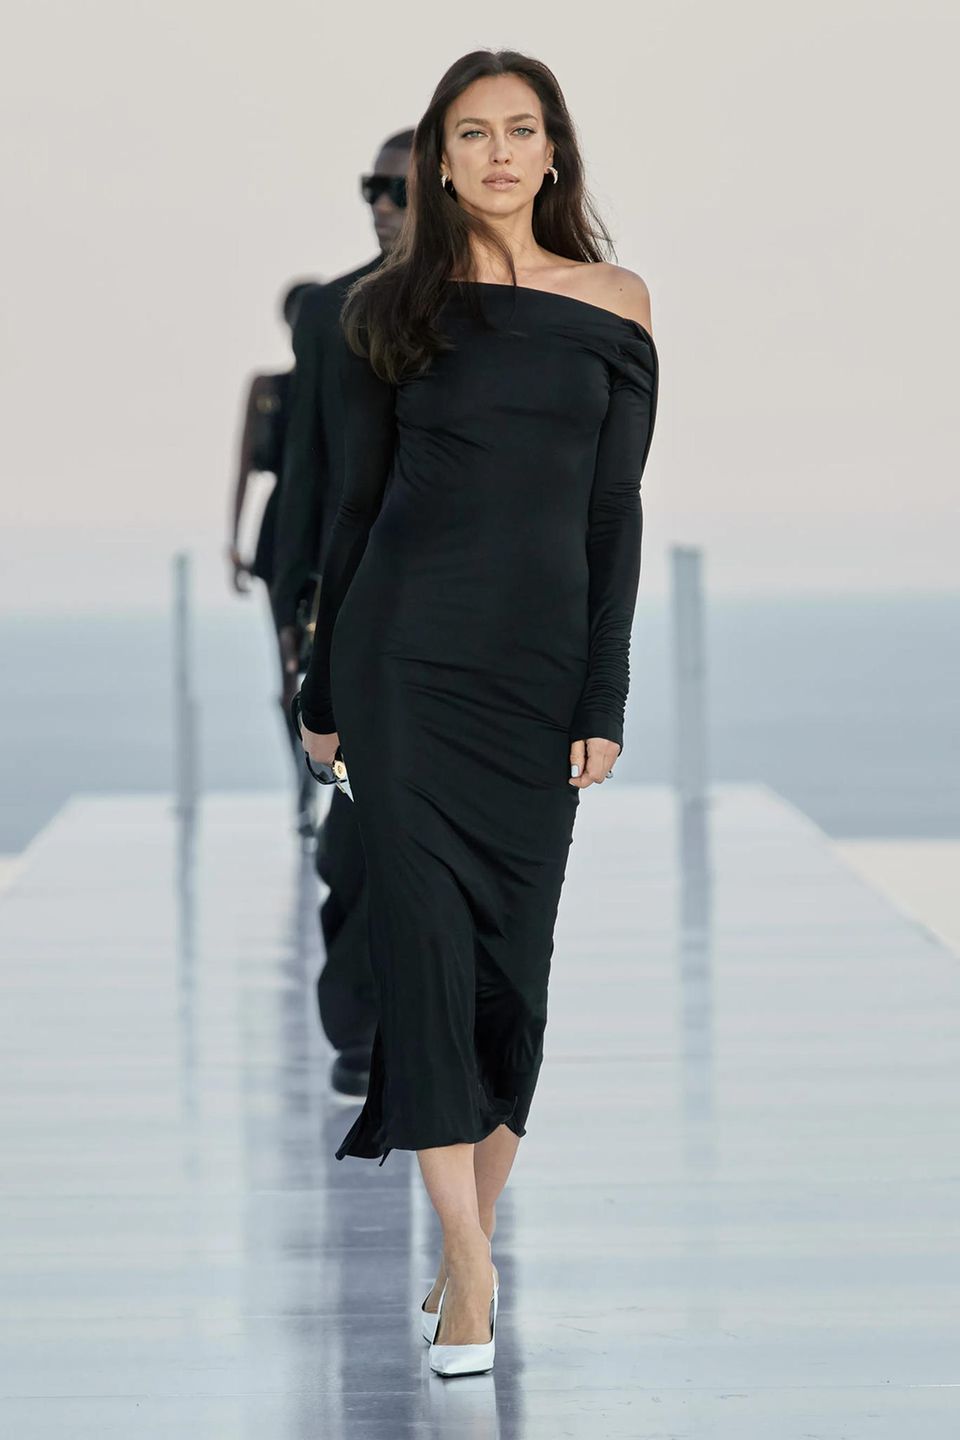 Mit einer spektakulären Modenschau in Cannes präsentierte Versace die neueste Zusammenarbeit mit Dua Lipa. Auf dem Laufsteg zu sehen: sexy Designs und hochkarätige Topmodels wie Irina Shayk, die sich ganz in Schwarz zeigt.